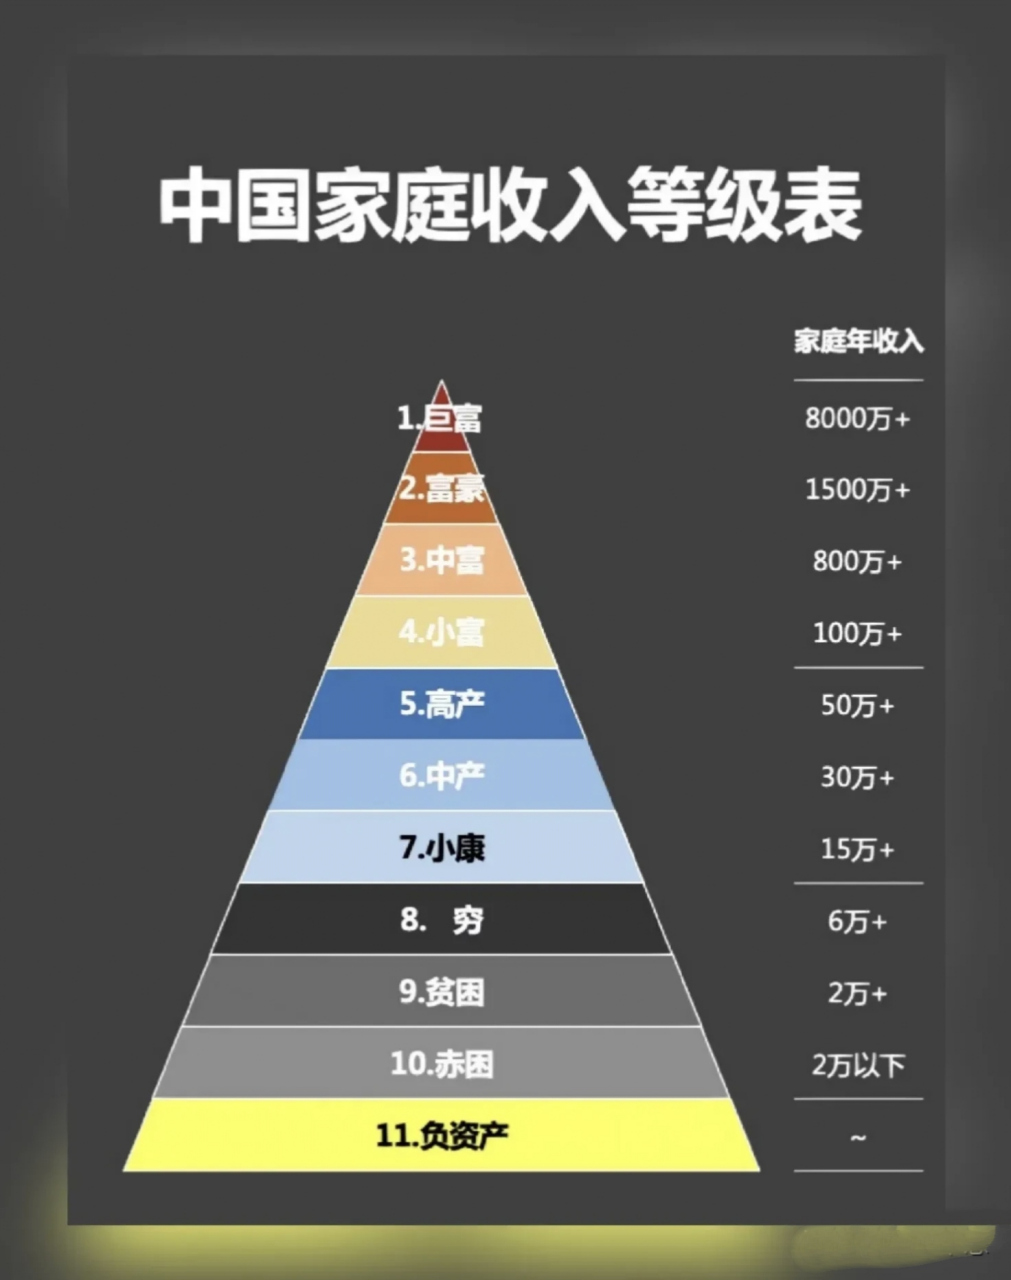 中国家庭收入等级表:  第一级,巨富,家庭年收入8000万以上 第二级